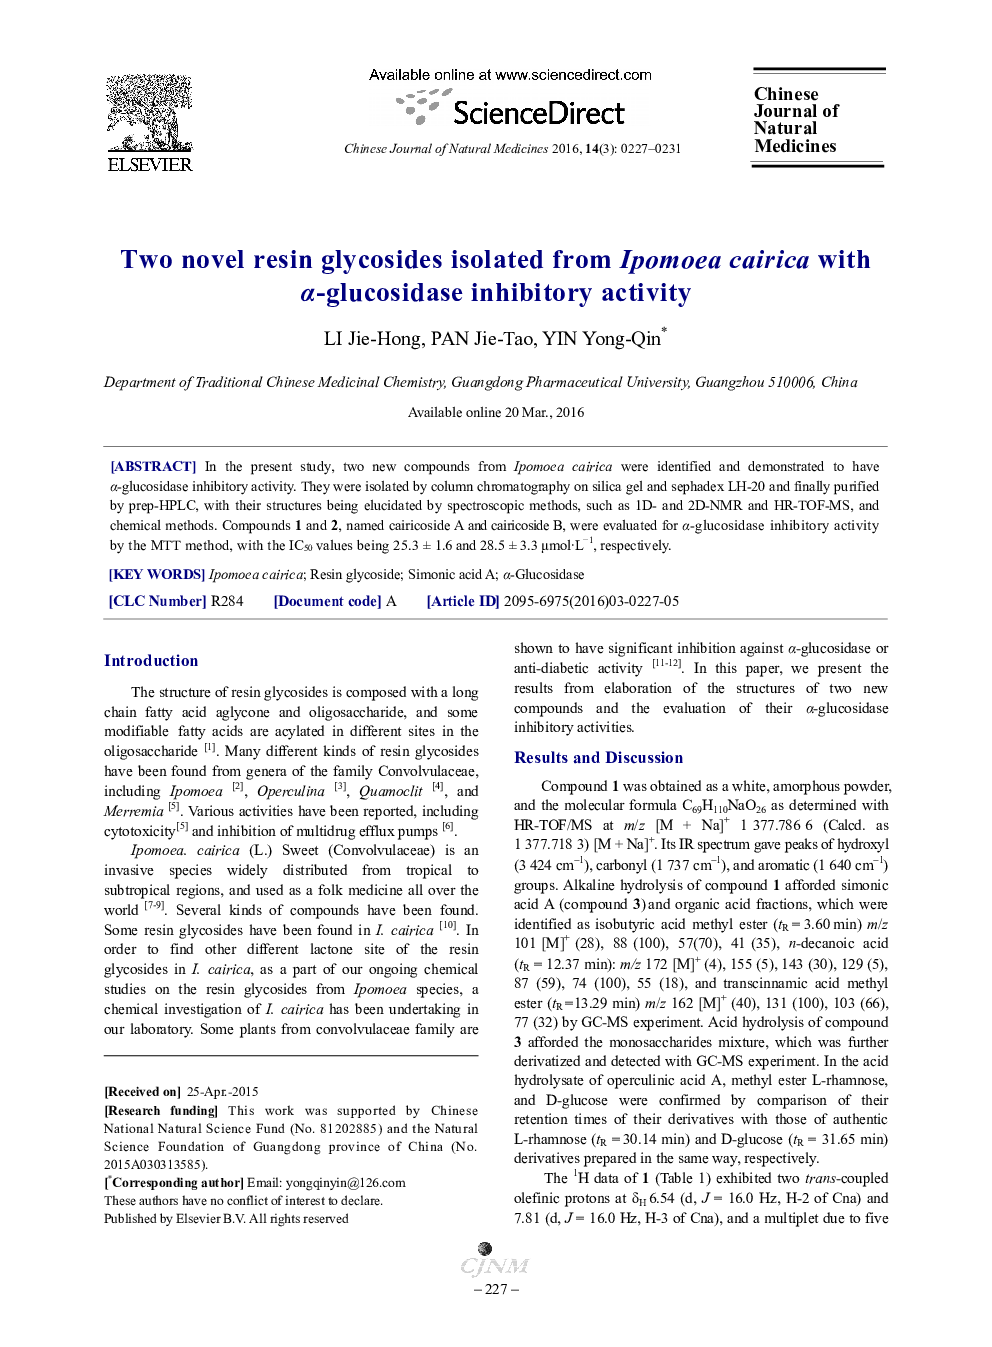 دو گلیکوزیدهای رزین جدید جدا شده از cairica Ipomoea با فعالیت بازدارندگی α-گلوکوزیداز